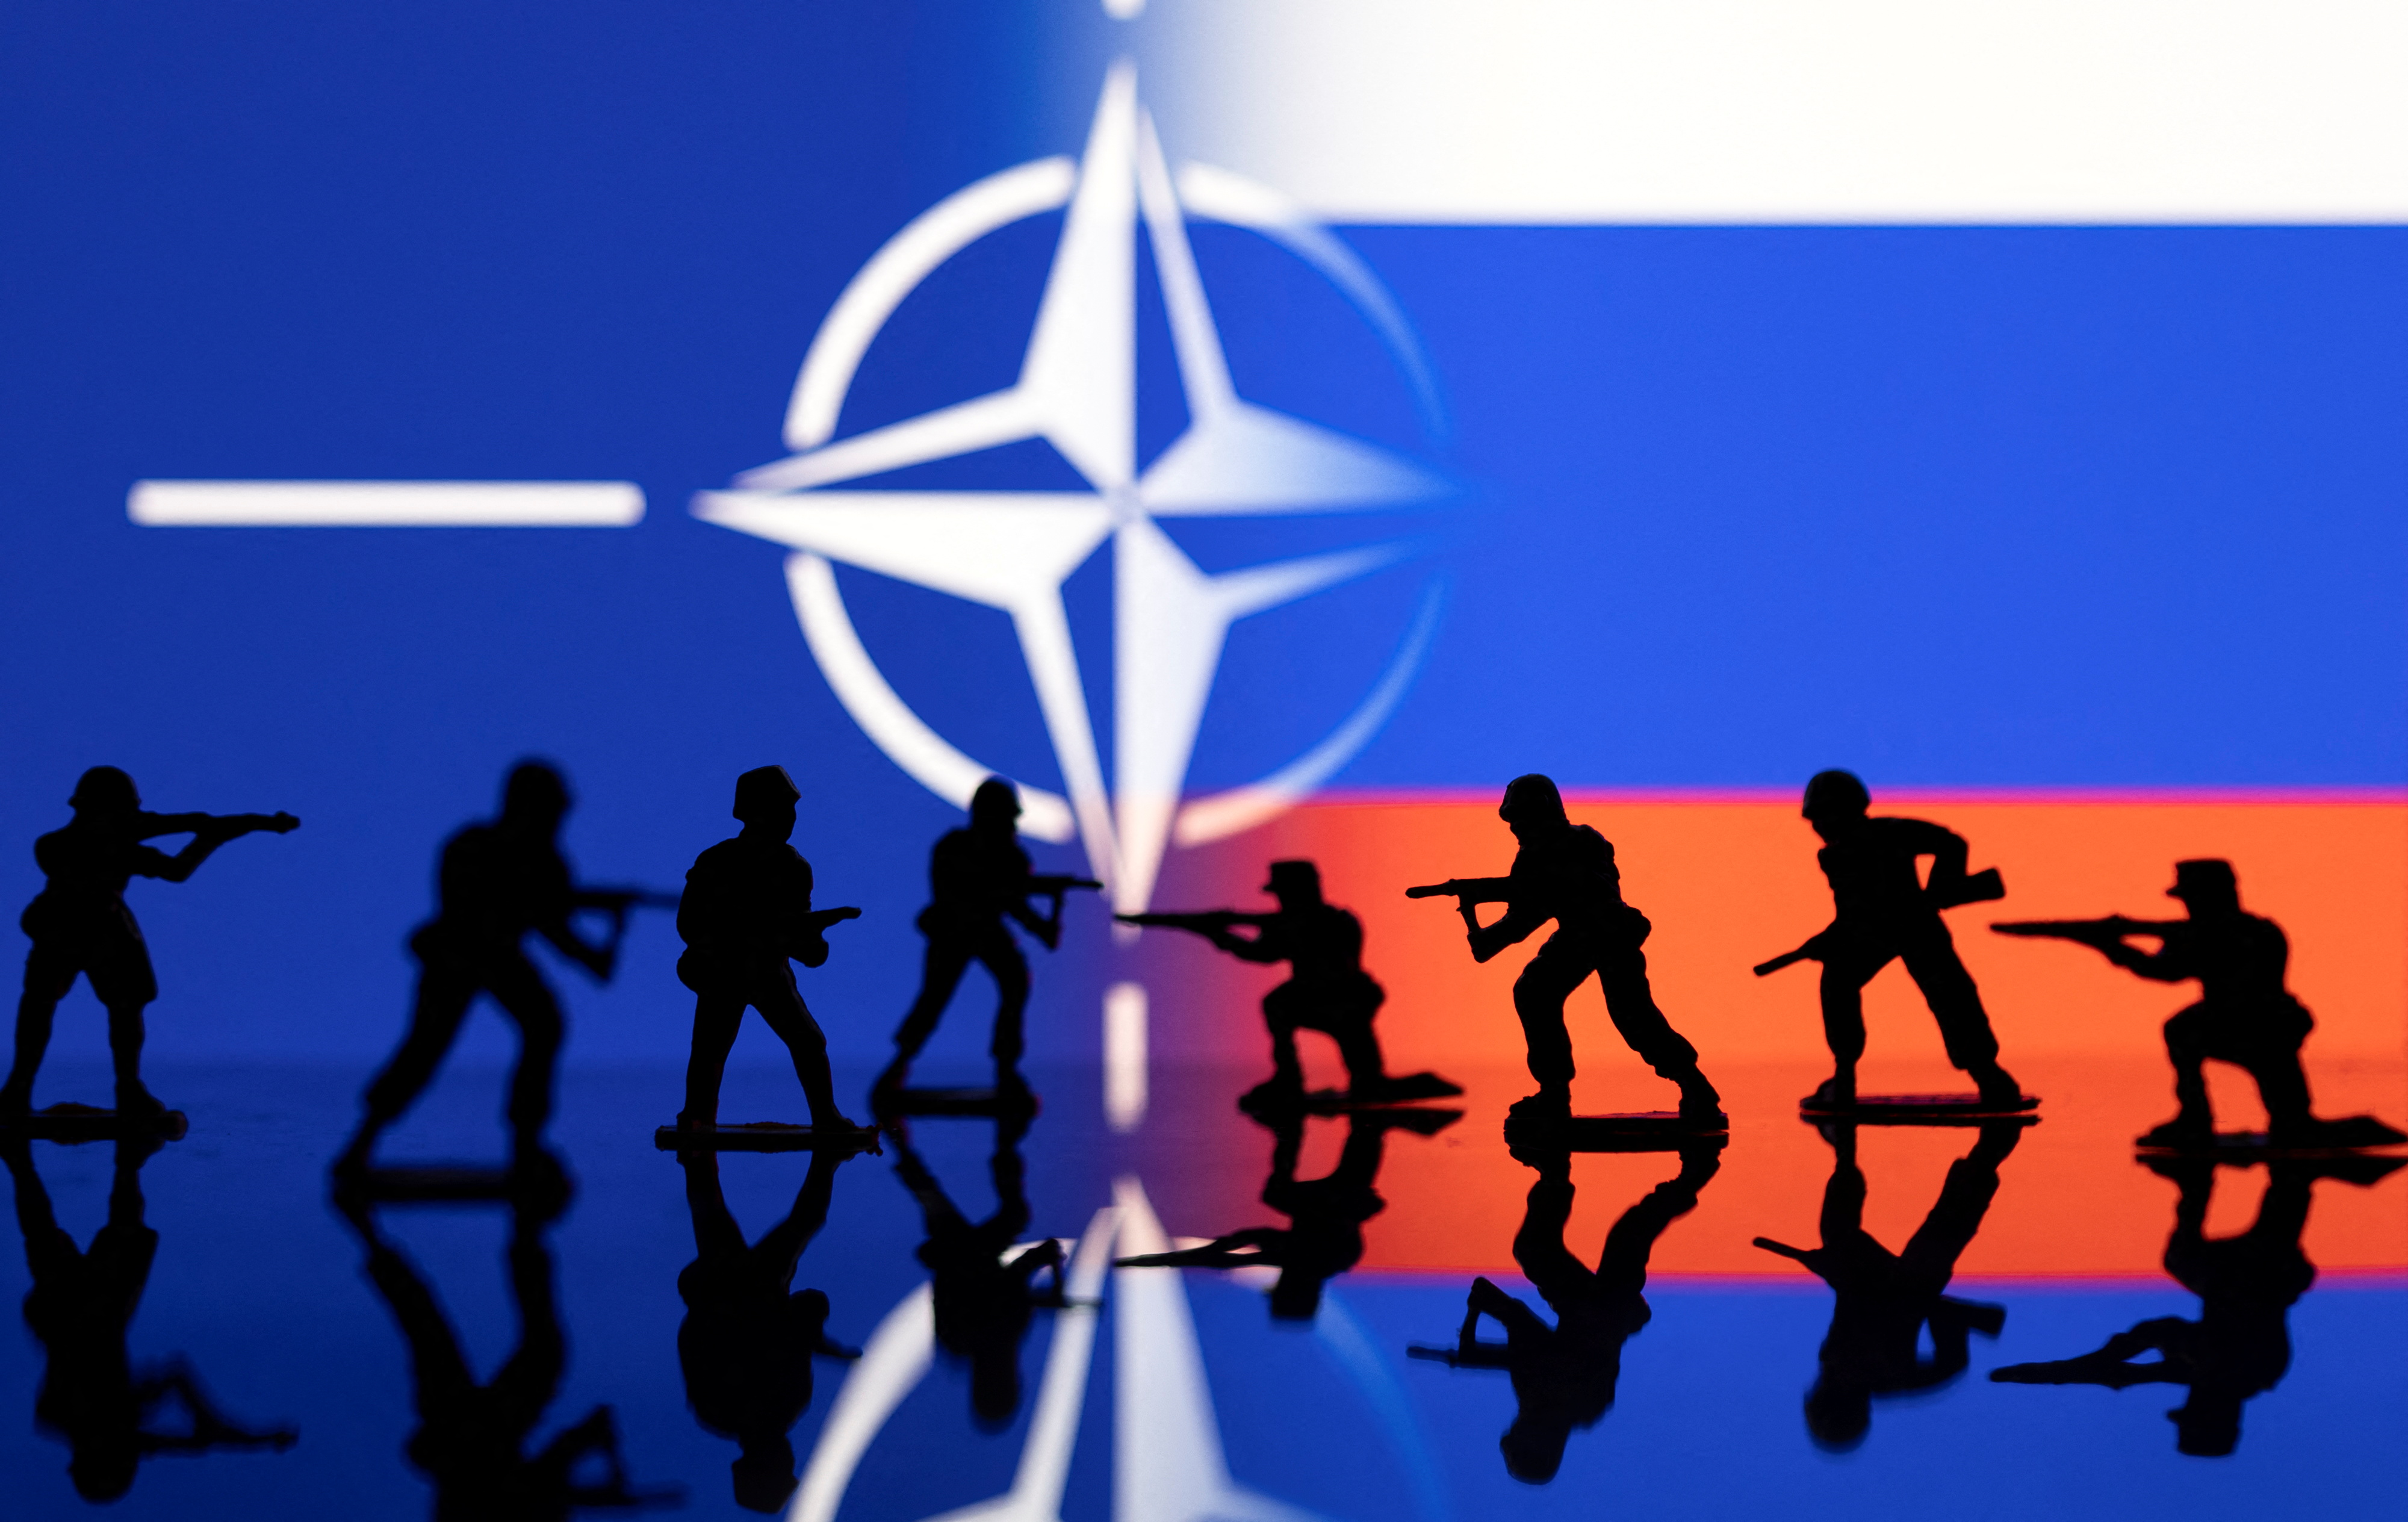 Une défense européenne au seuil de l'autonomie passe par un pilier européen fort dans l'OTAN